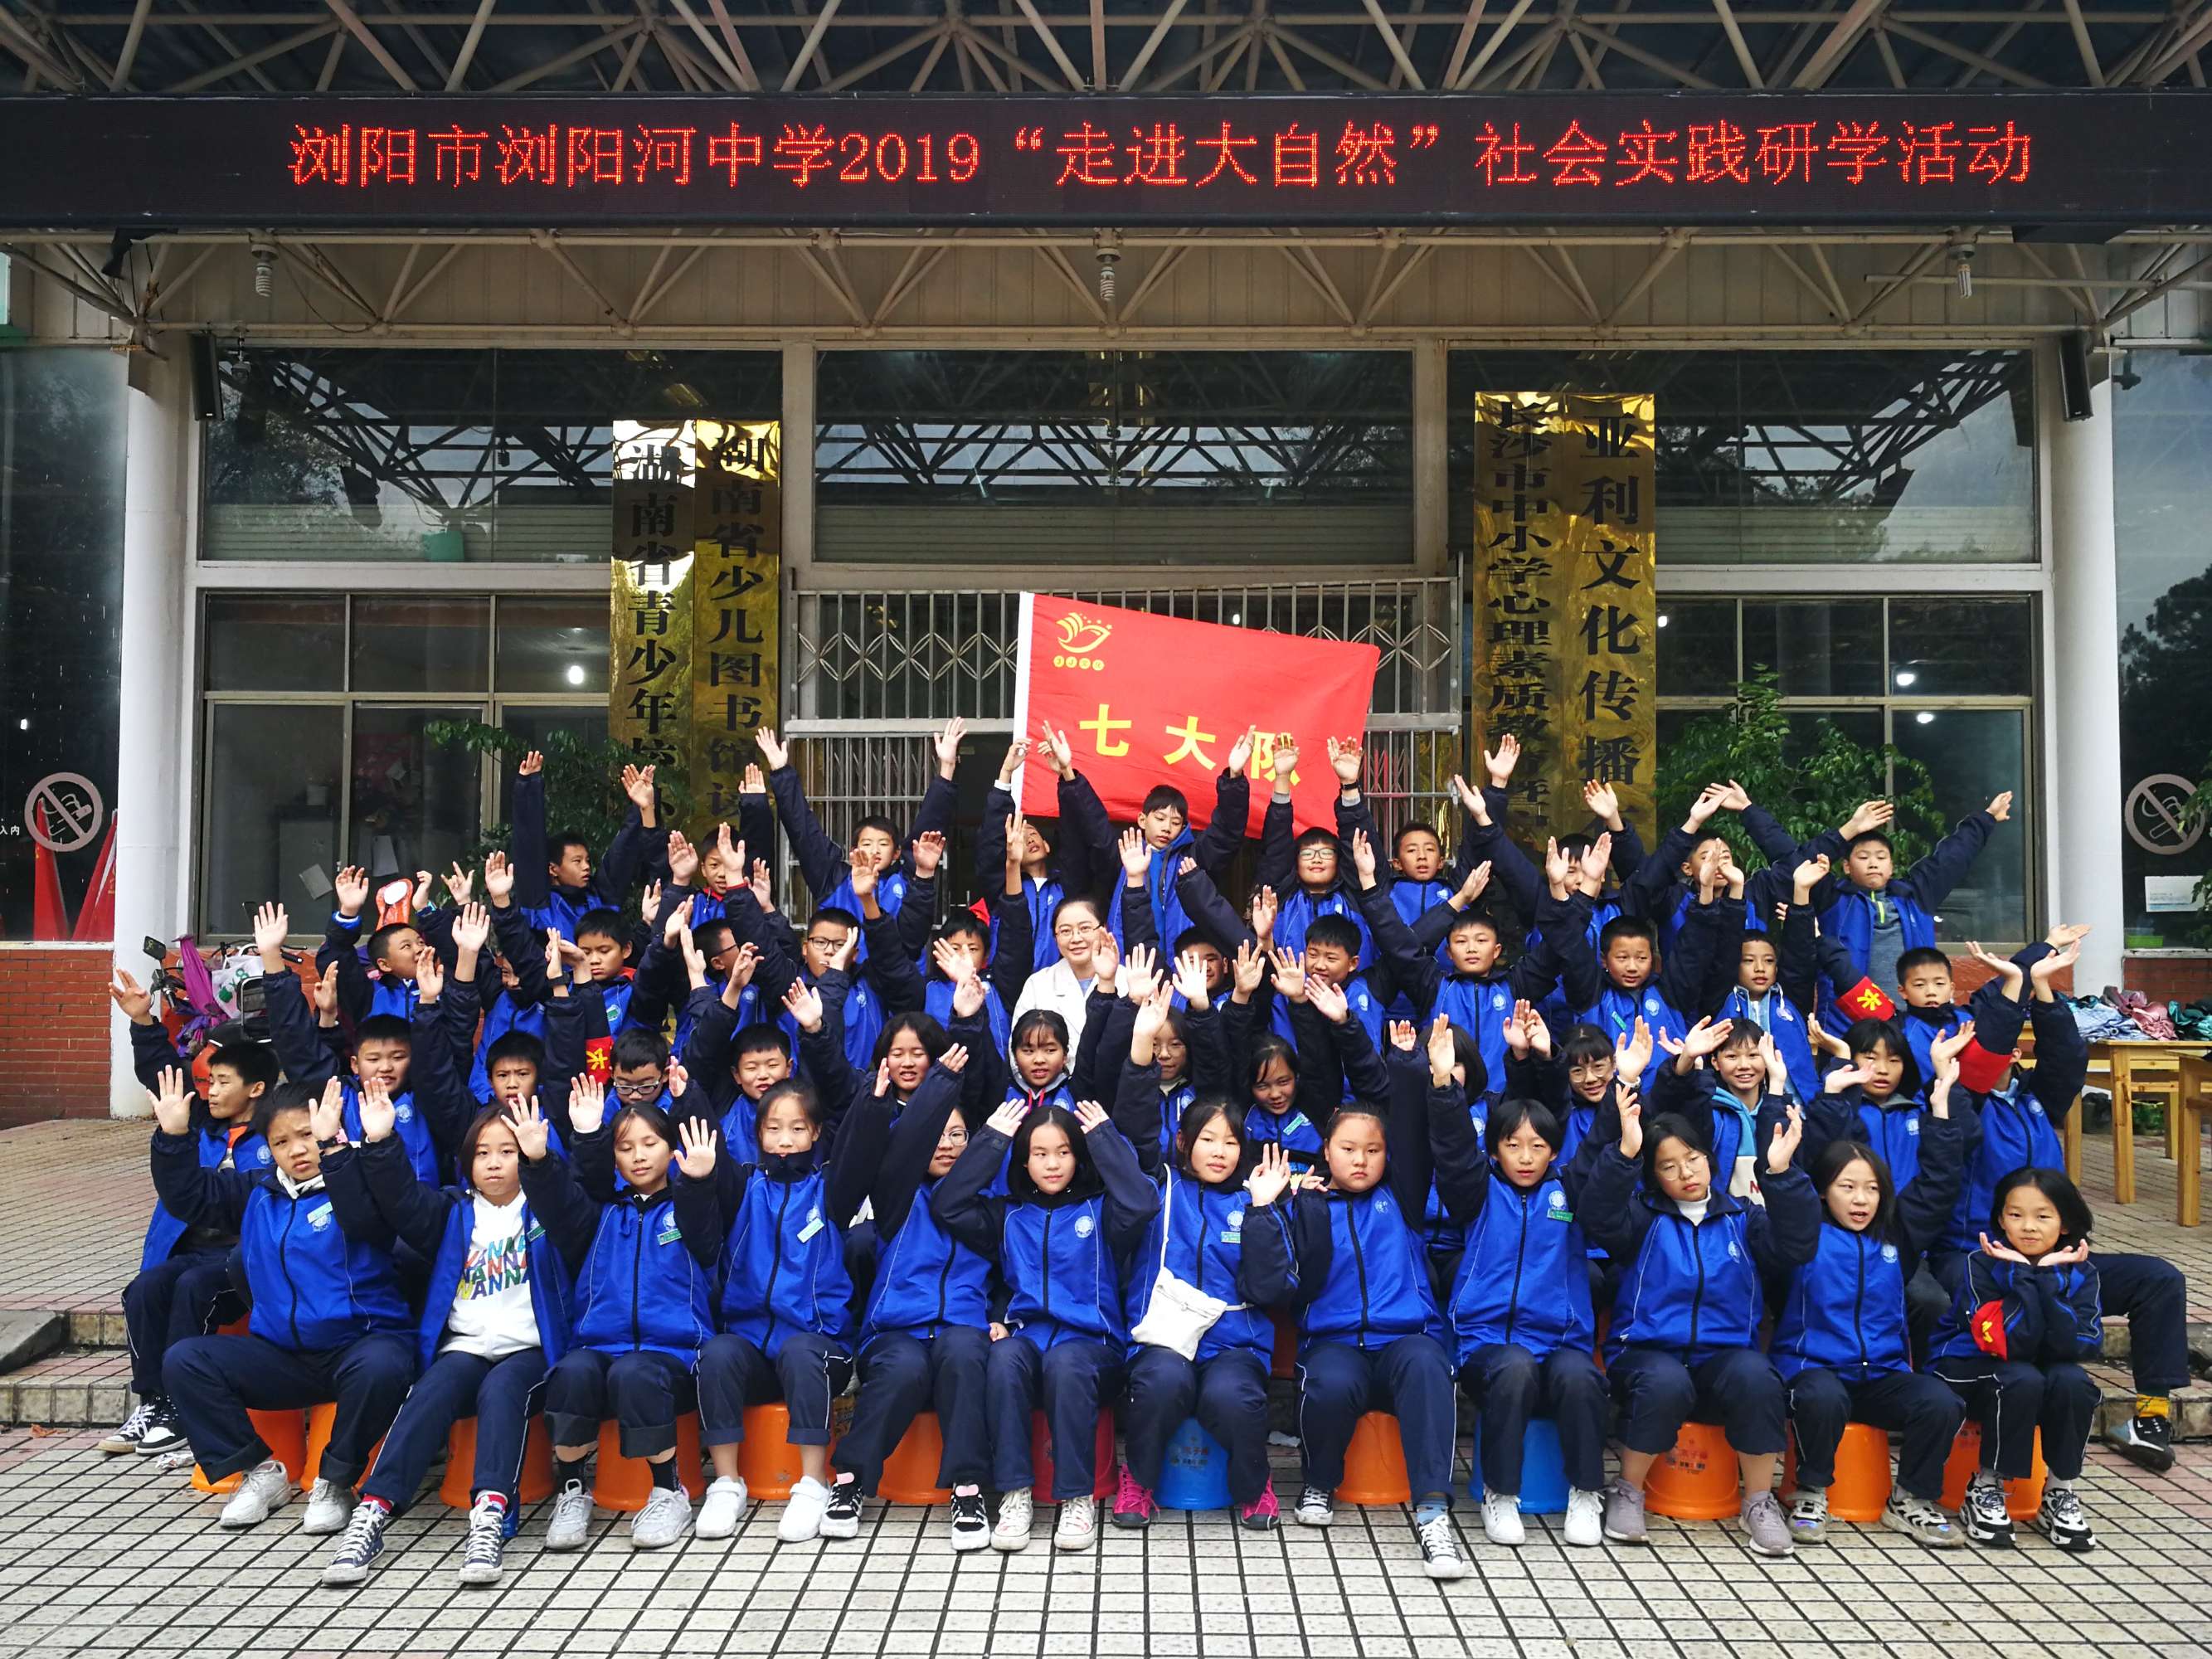 浏阳市新添一所优质球王会普高9月开学新增600学位